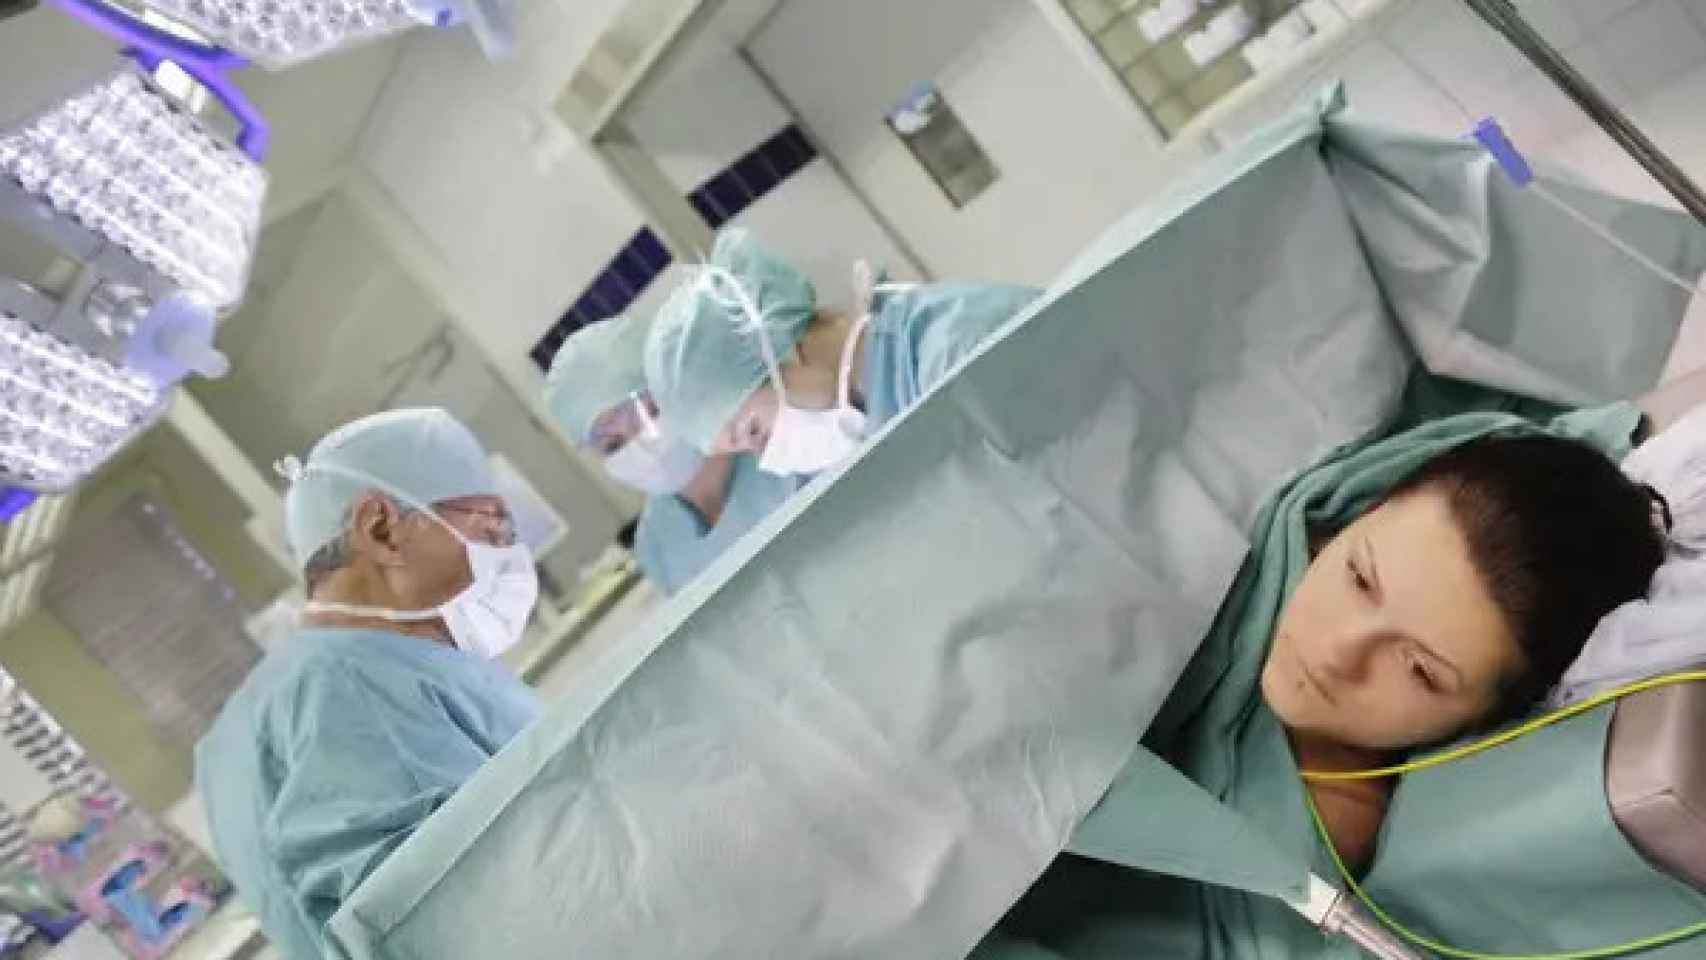 Una mujer, durante una cesárea, en imagen de archivo.